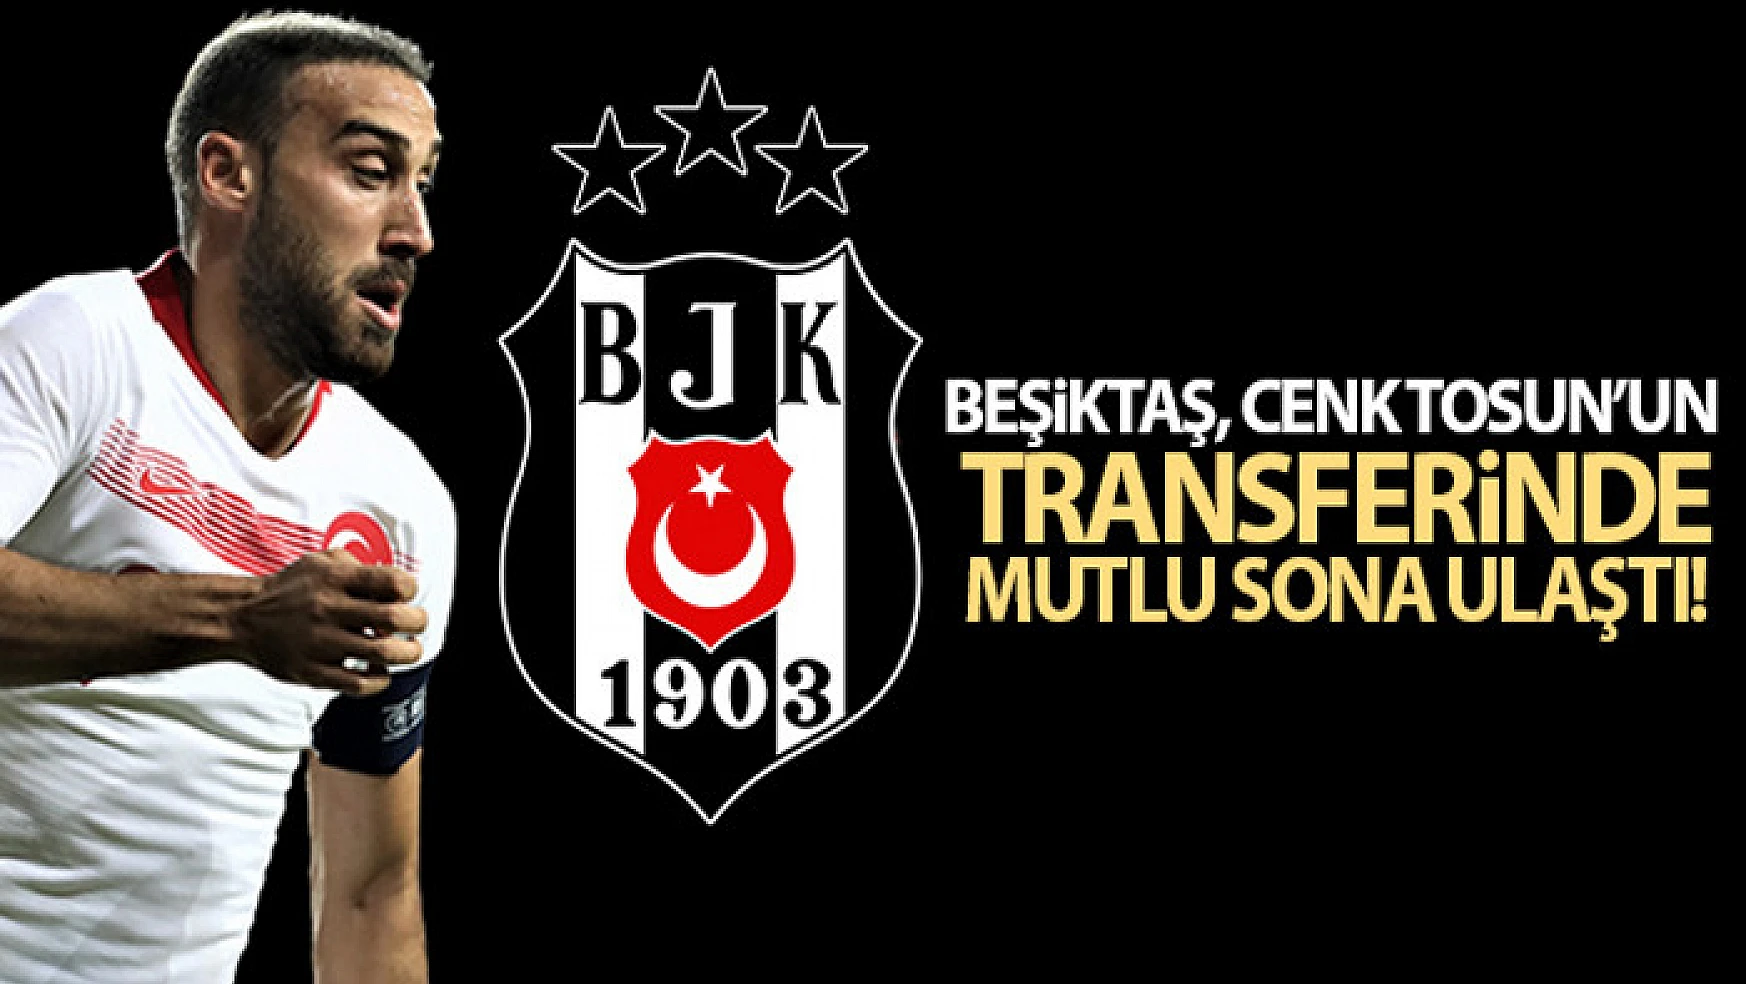 Beşiktaş, Cenk Tosun''un transferinde mutlu sona ulaştı